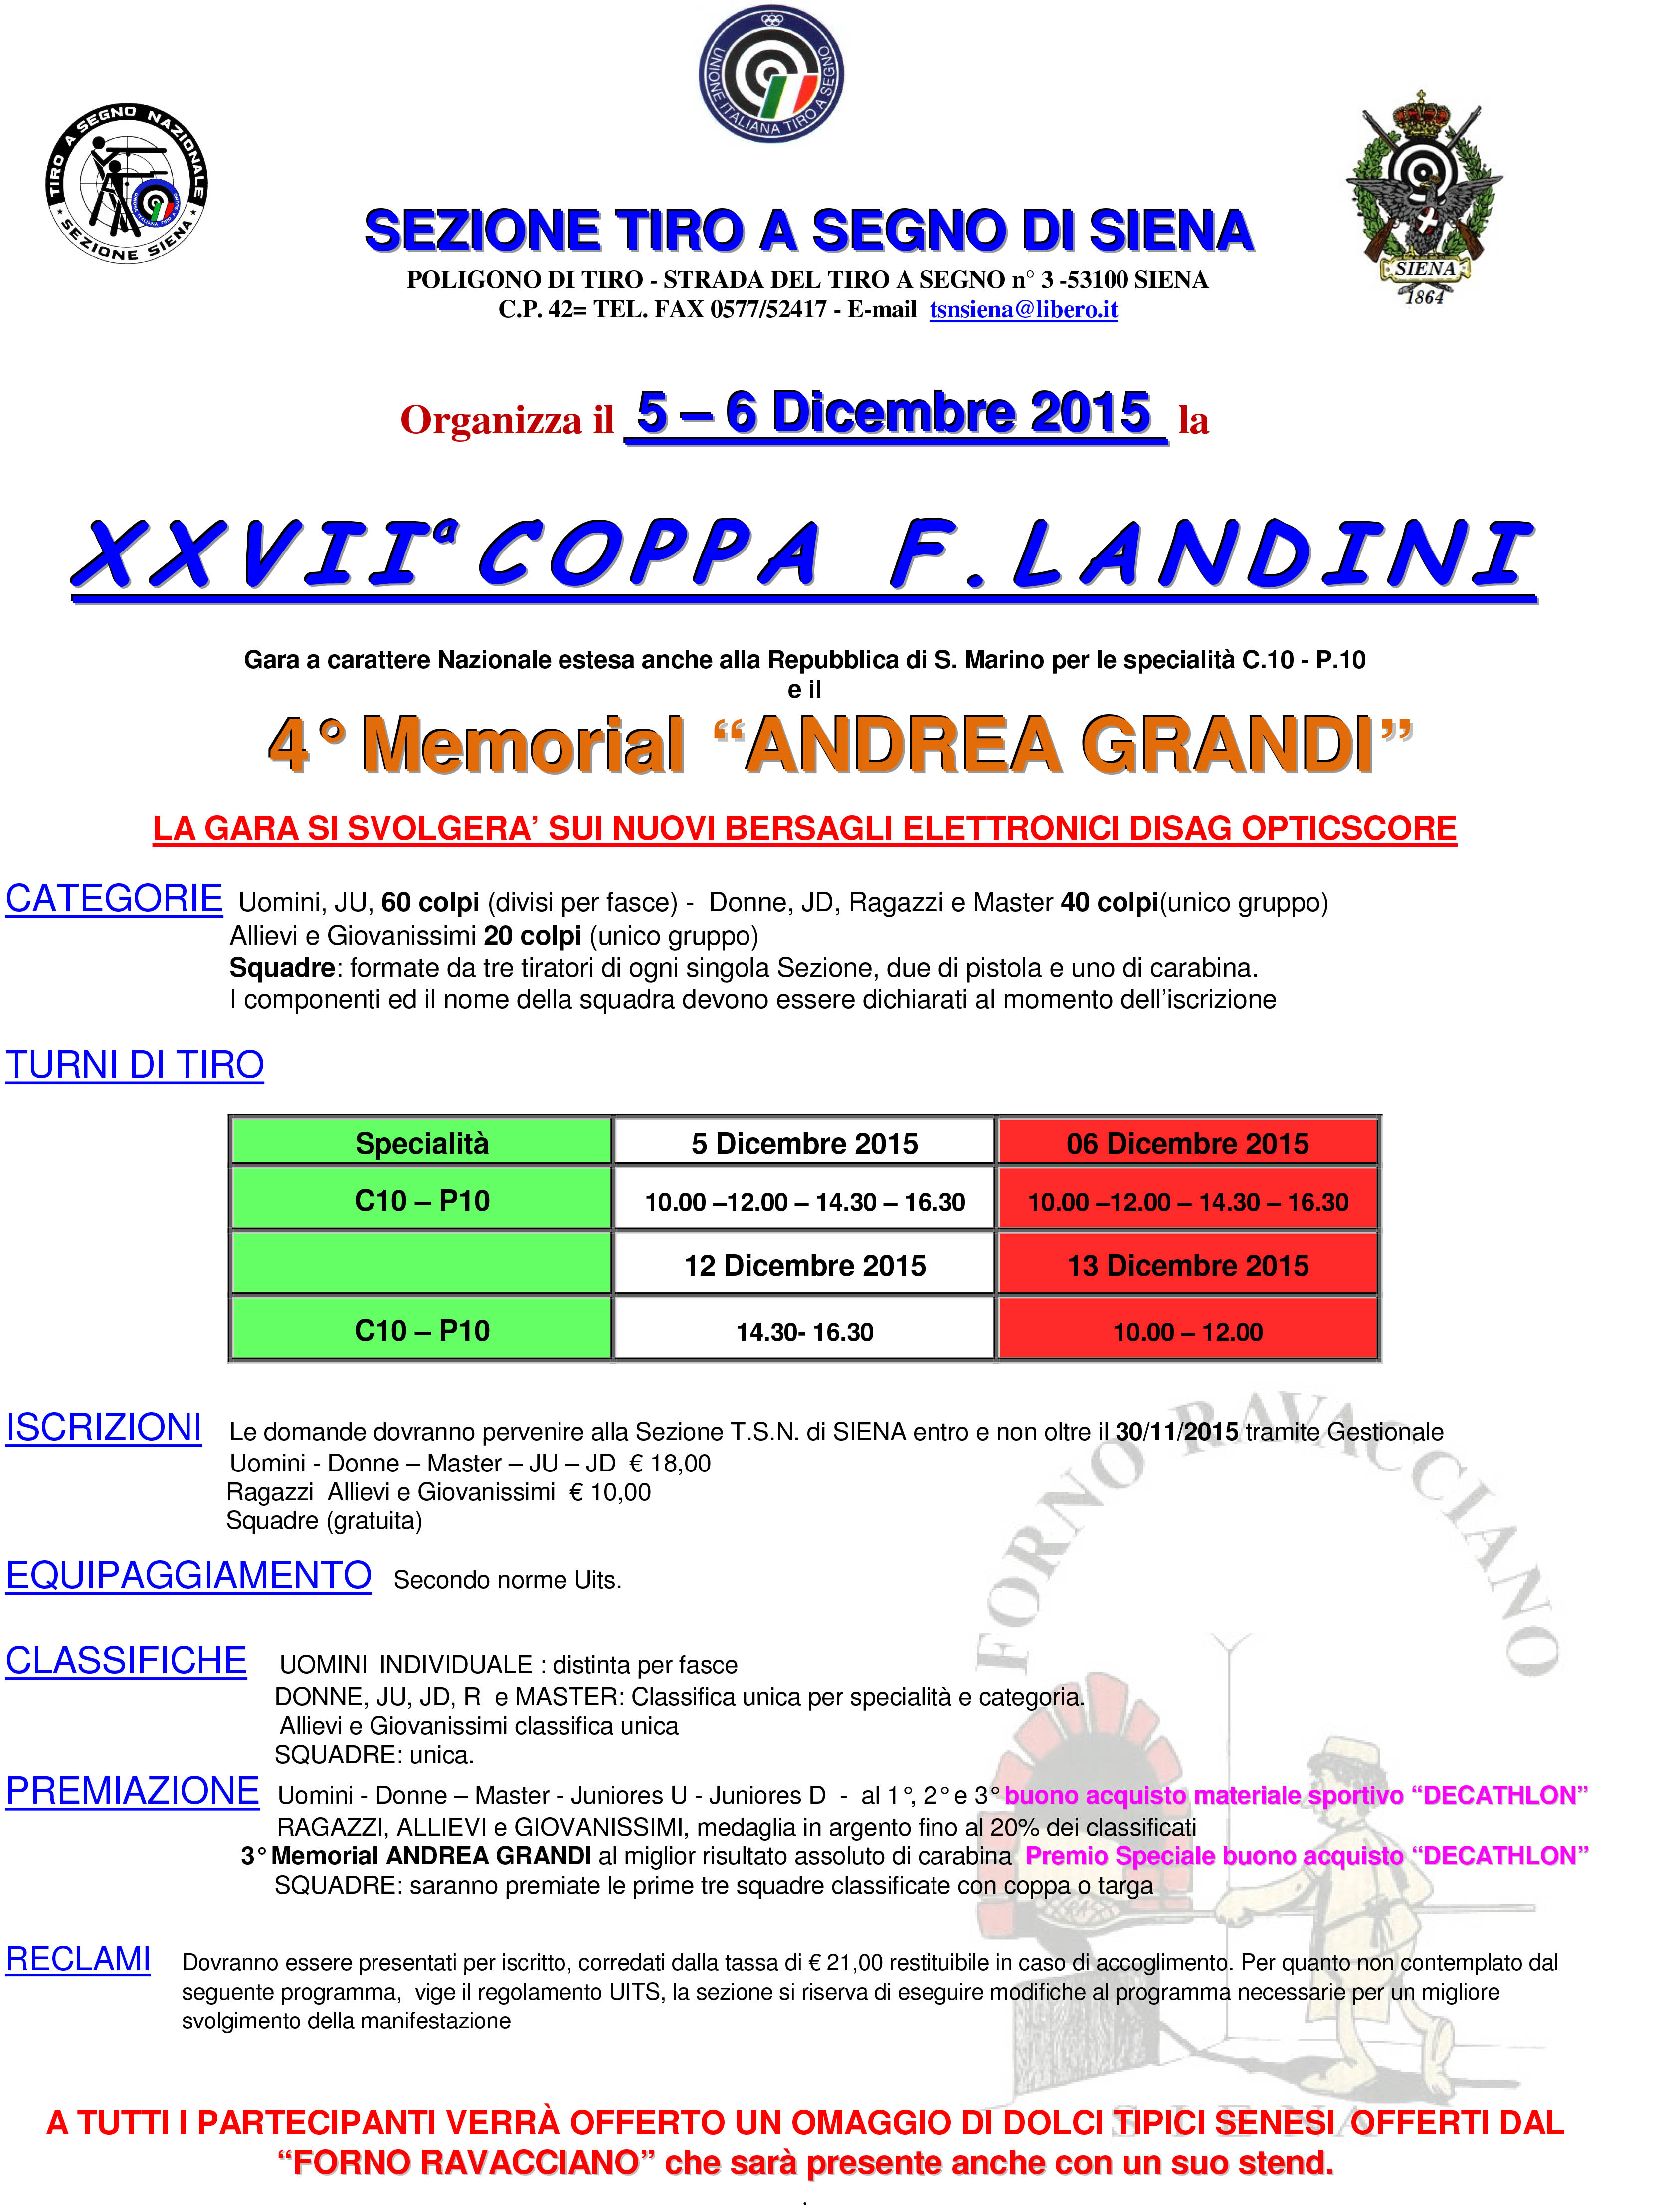 Microsoft Word - XXVII_Coppa_LANDINI_-_2015 modifica del 02-11-1